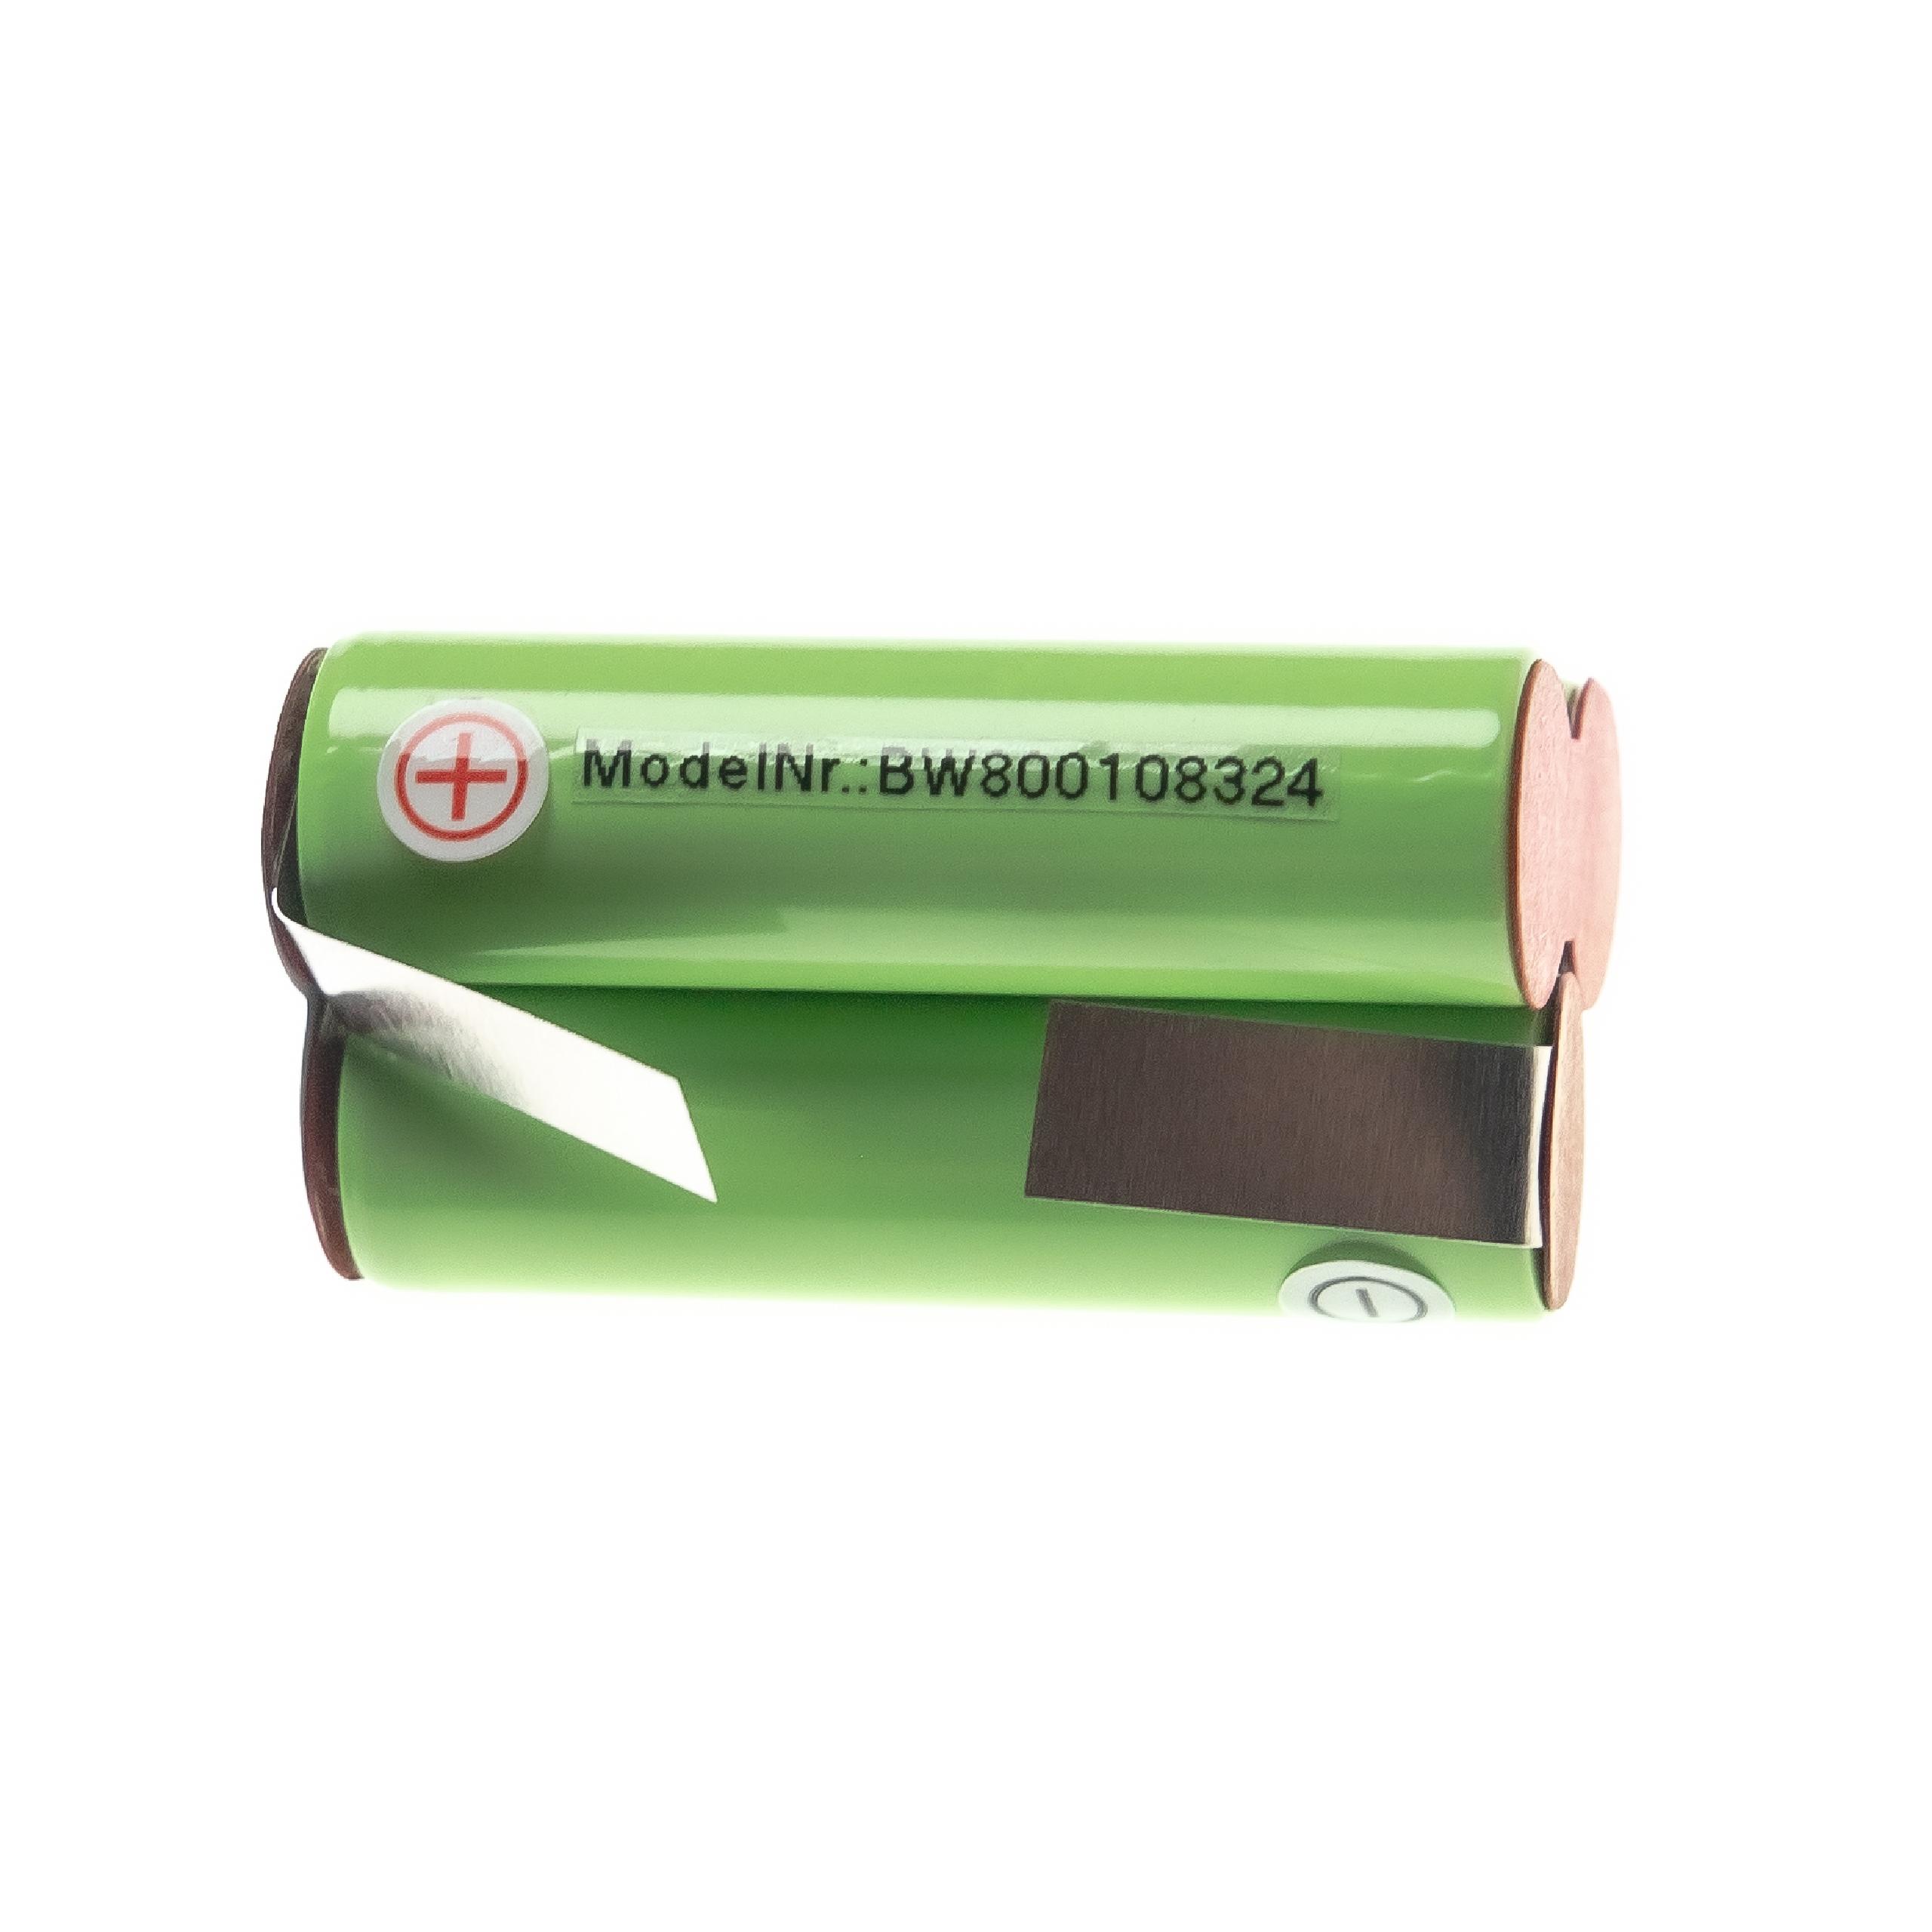 Batterie remplace AEG / Elektrolux Type 141 pour aspirateur - 2000mAh 3,6V NiMH